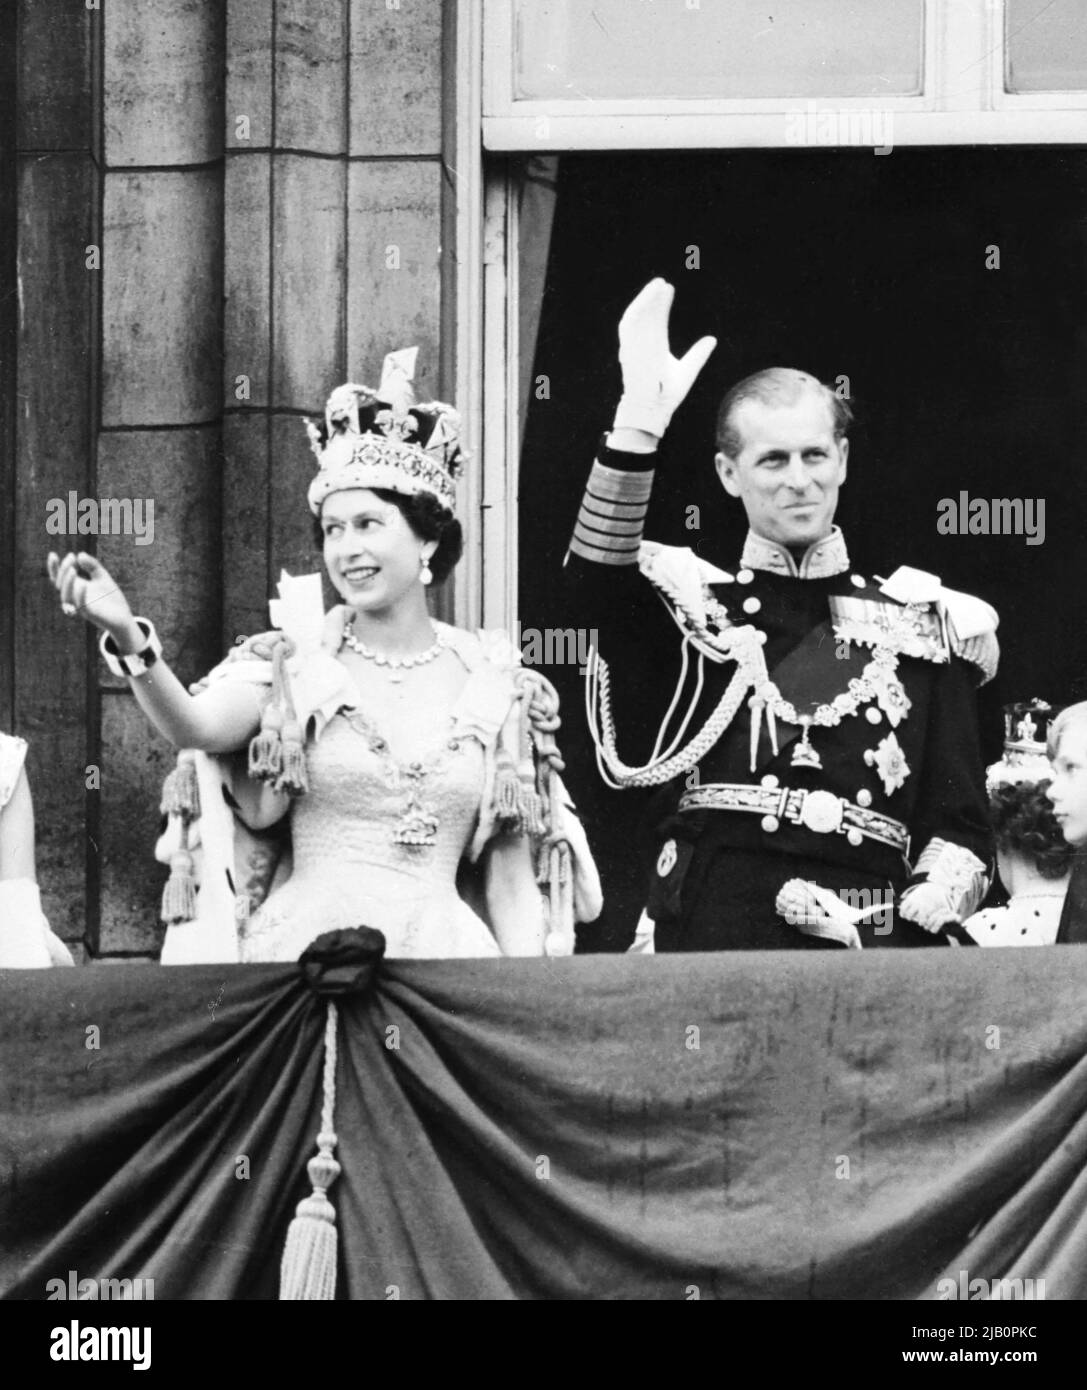 Am 2. Juni 1953 winkt die britische Königin Elizabeth II. (L) in Begleitung des britischen Prinzen Philip, Duke of Edinburgh (R), nach der Krönung in der Westminter Abbey in London der Menge zu. - Elizabeth heiratete den Herzog von Edinburgh am 20.. November 1947 und wurde 1952 im Alter von 25 Jahren zur Königin ernannt. Ihre Krönung war die erste weltweite Fernsehveranstaltung Stockfoto